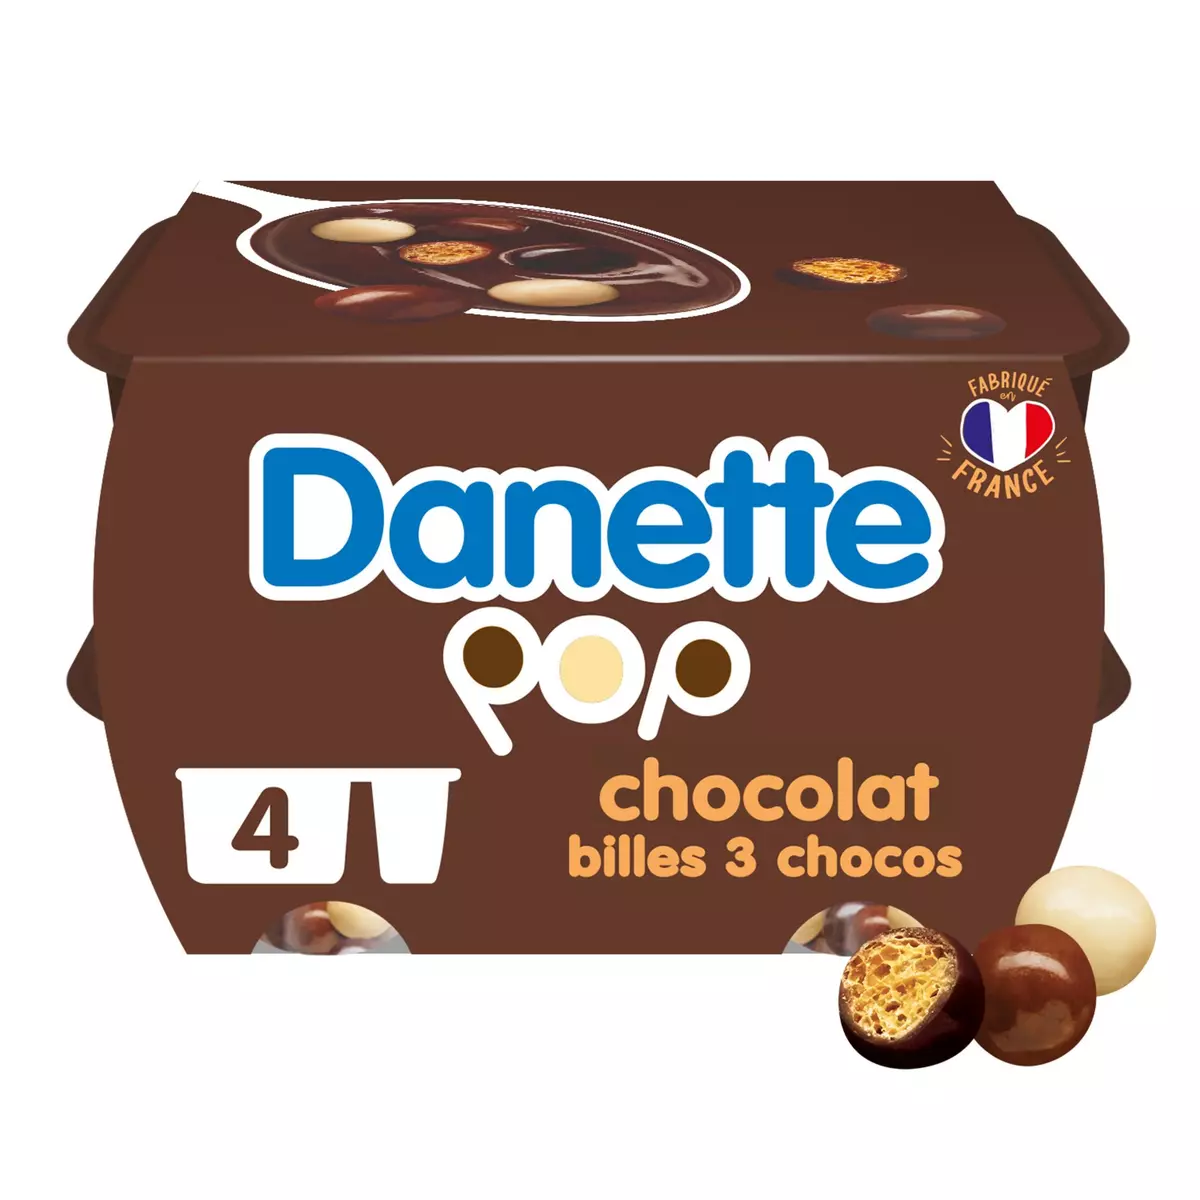 DANETTE POP - Crème dessert chocolat et billes 3 chocos 4x117g